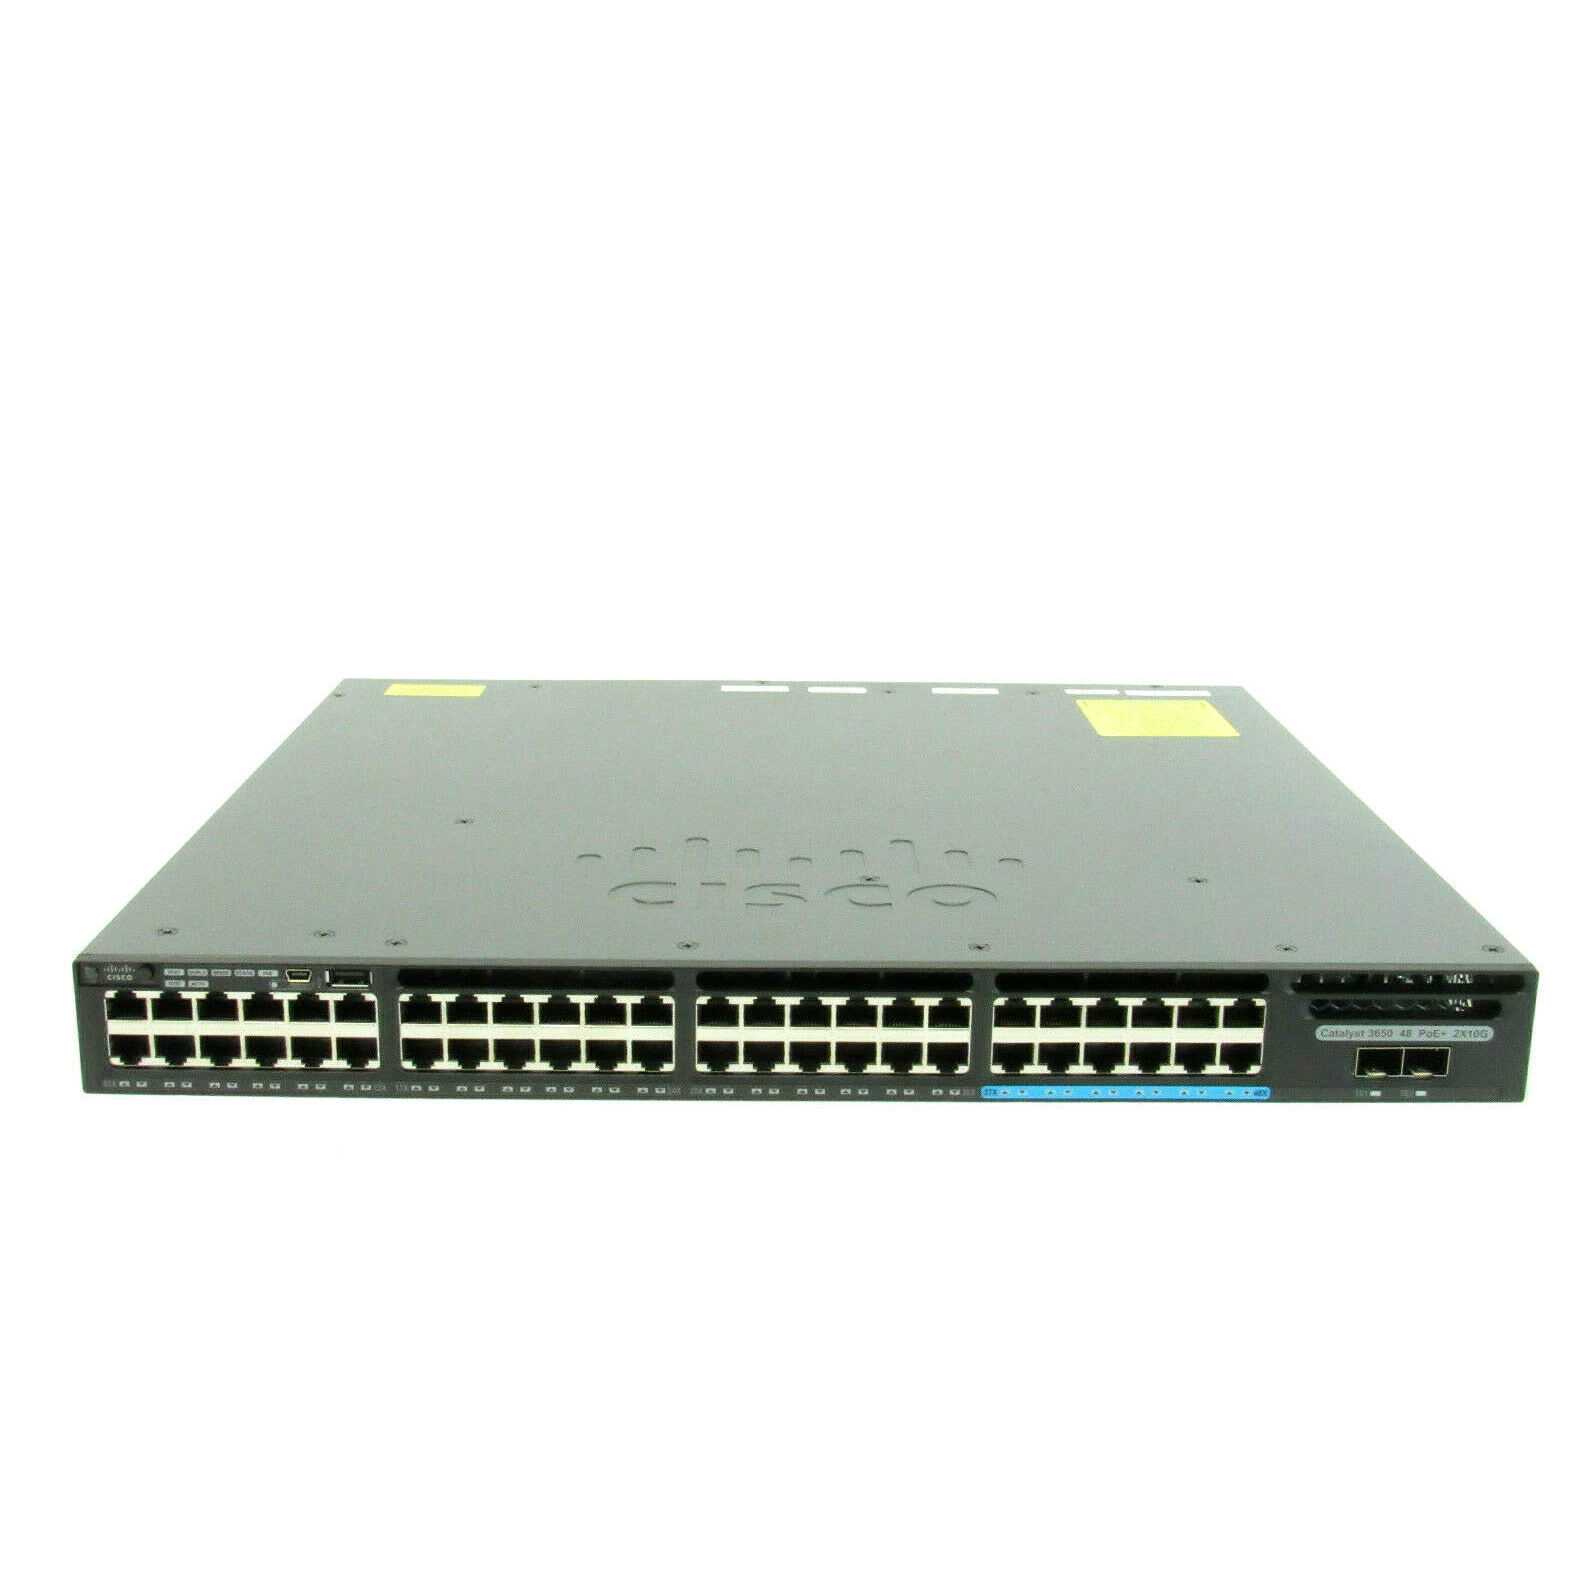 Маршрутизатор и коммутатор Cisco WS-C3650-48TS-L - подробные характеристики обзоры видео фото Цены в интернет-магазинах где можно купить маршрутизатор и коммутатор Cisco WS-C3650-48TS-L